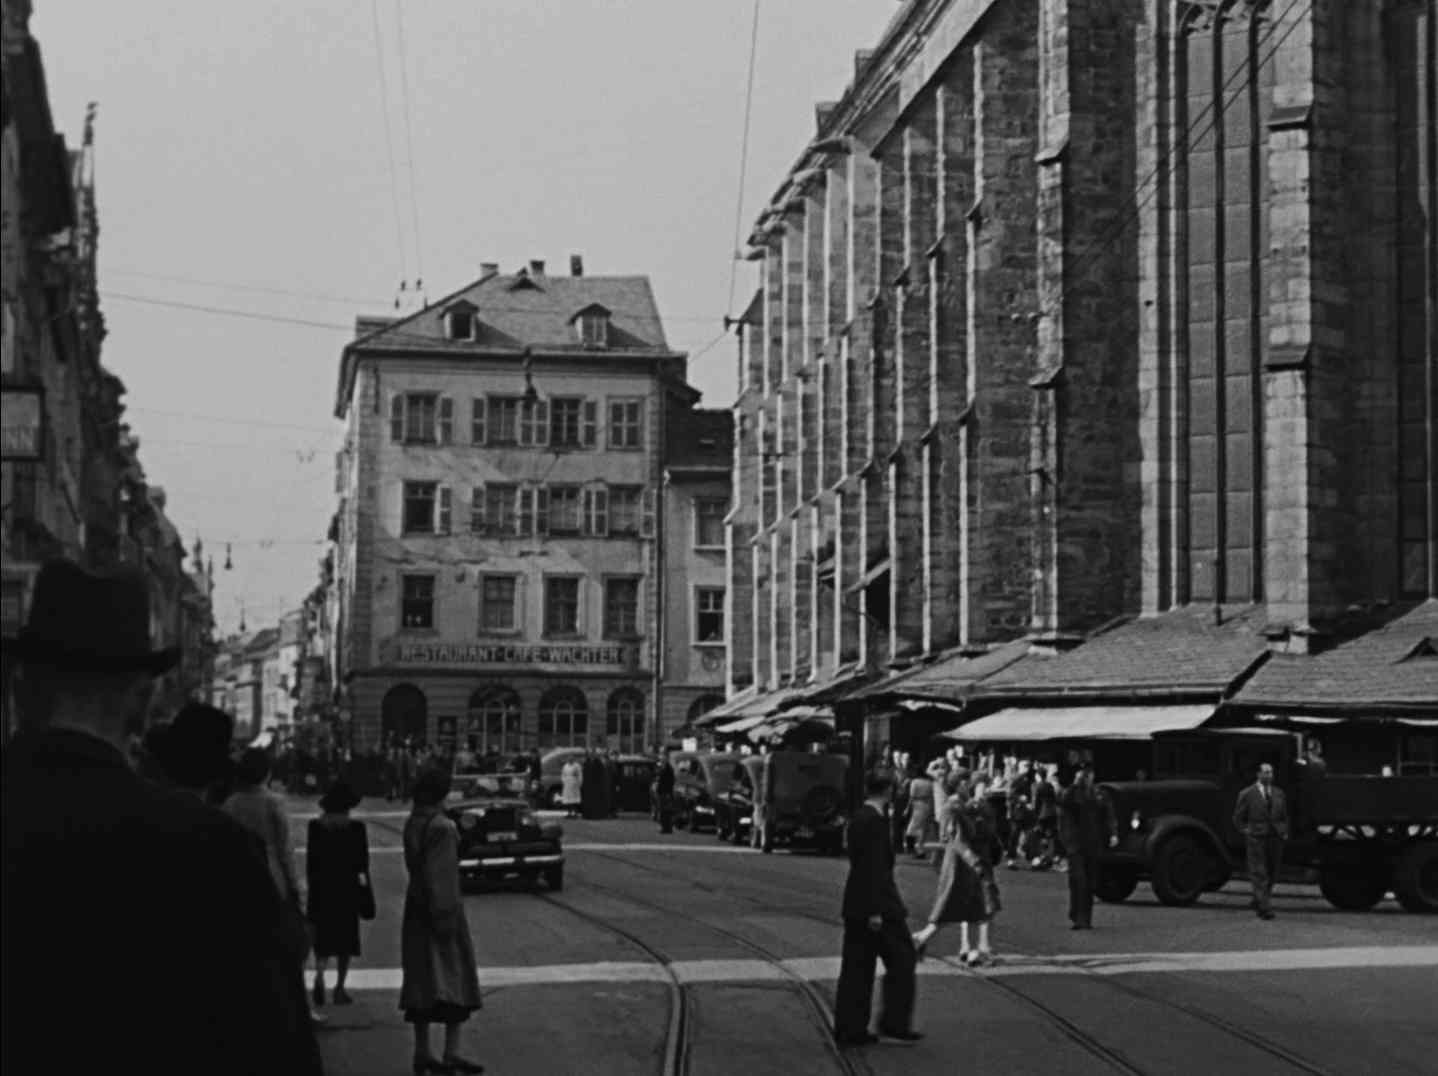 Schwarz-Weiß-Aufnahme vom Marktplatz in Heidelberg; rechts ist die Außenwand der Heiliggeistkirche zu erkennen, im Hintergrund ein Eckhaus mit einem Schild, das die Aufschrift „Restaurant Cafe Wachter“ in Großbuchstaben trägt.